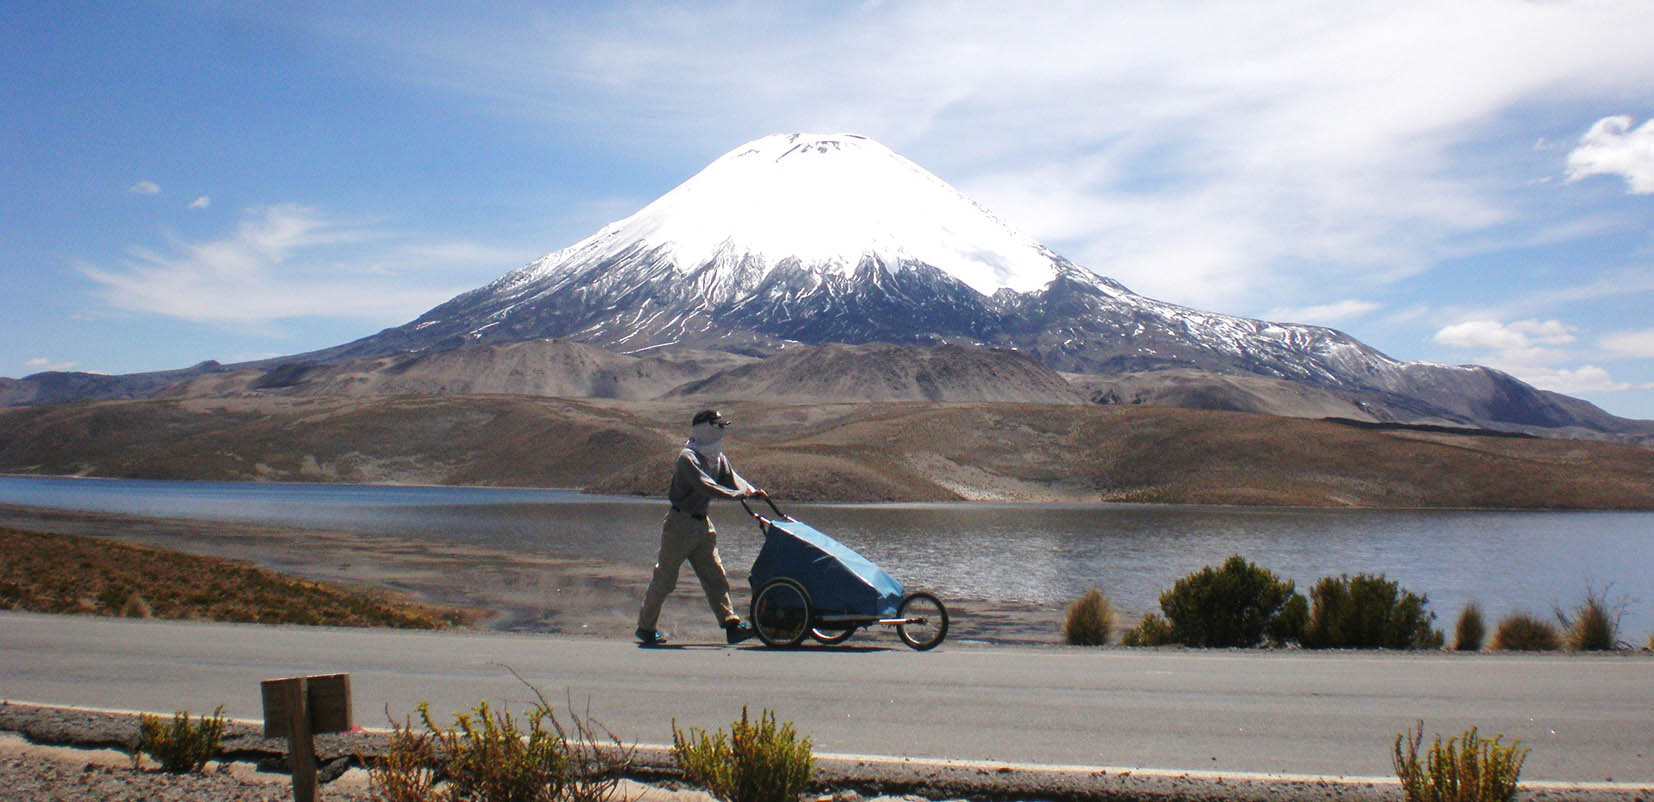 Nacho Dean en Los Andes durante la expedición que llevó a unir caminando todos los continentes.